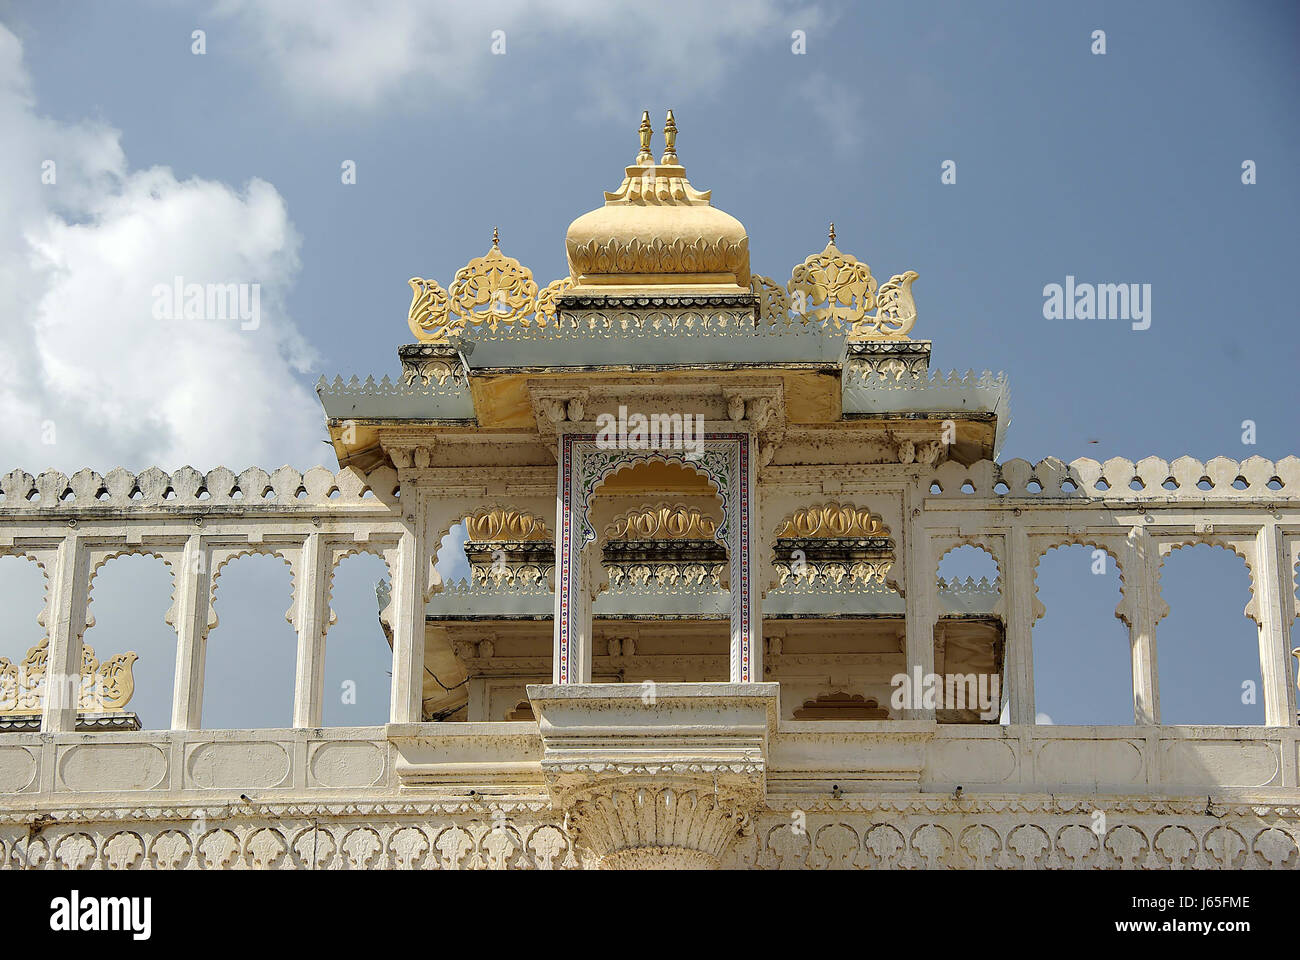 Città palazzo comunale della città monumento storico asia india obiettivo passaggio archgway gate Foto Stock